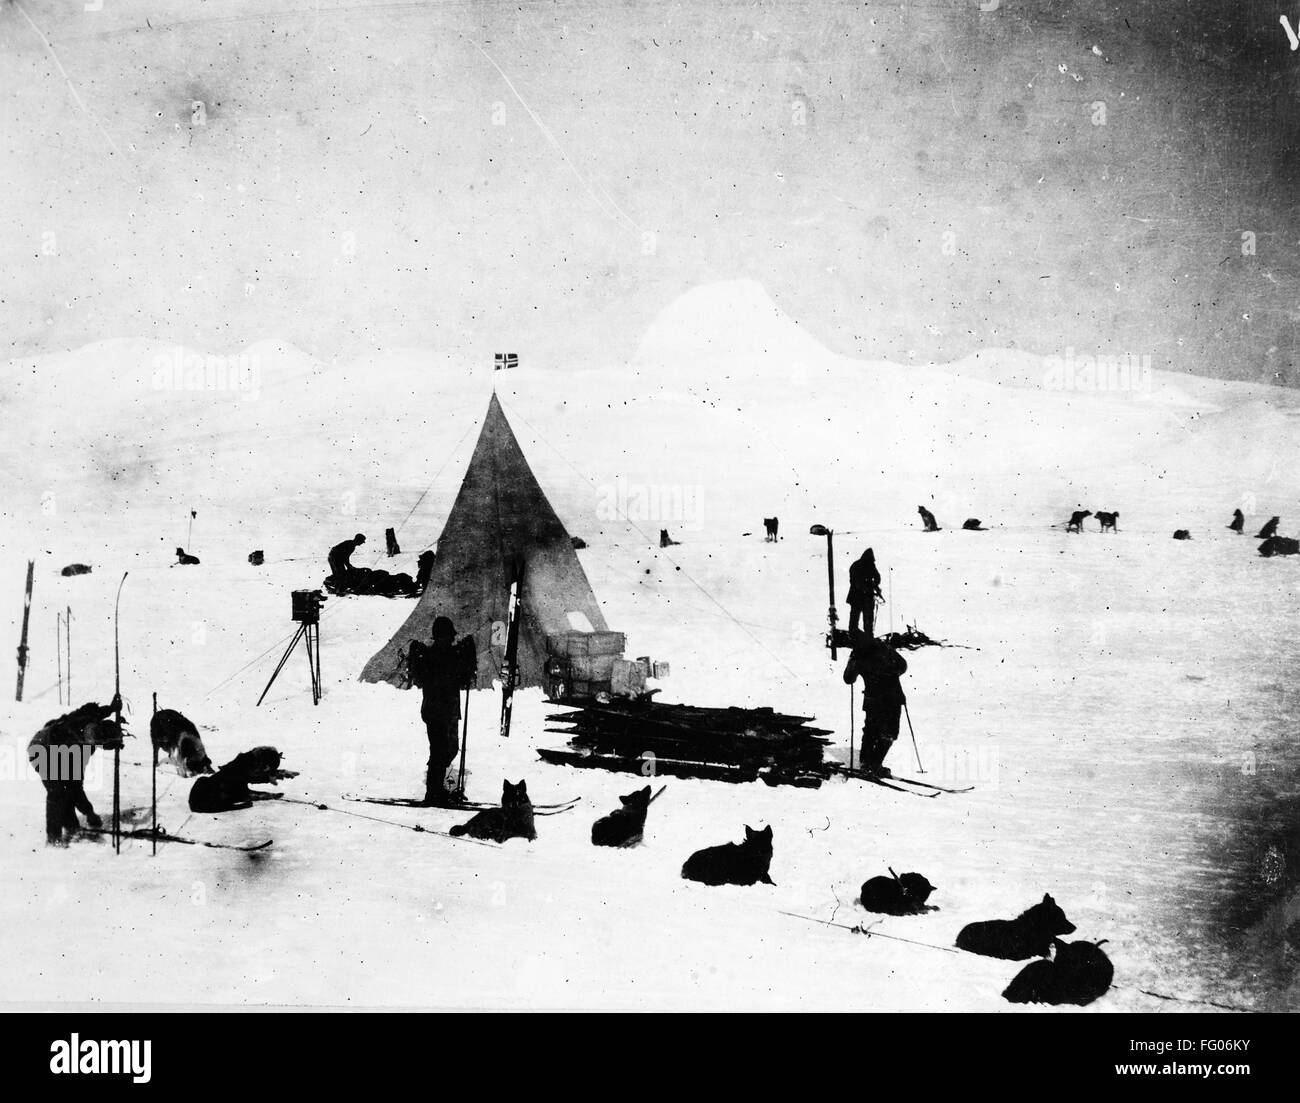 ROALD AMUNDSEN (1872-1928). /NNorwegian esploratore polare. Il camp di Amundsen e equipaggio fotografato durante una spedizione in Antartide, 23 maggio 1912. Foto Stock